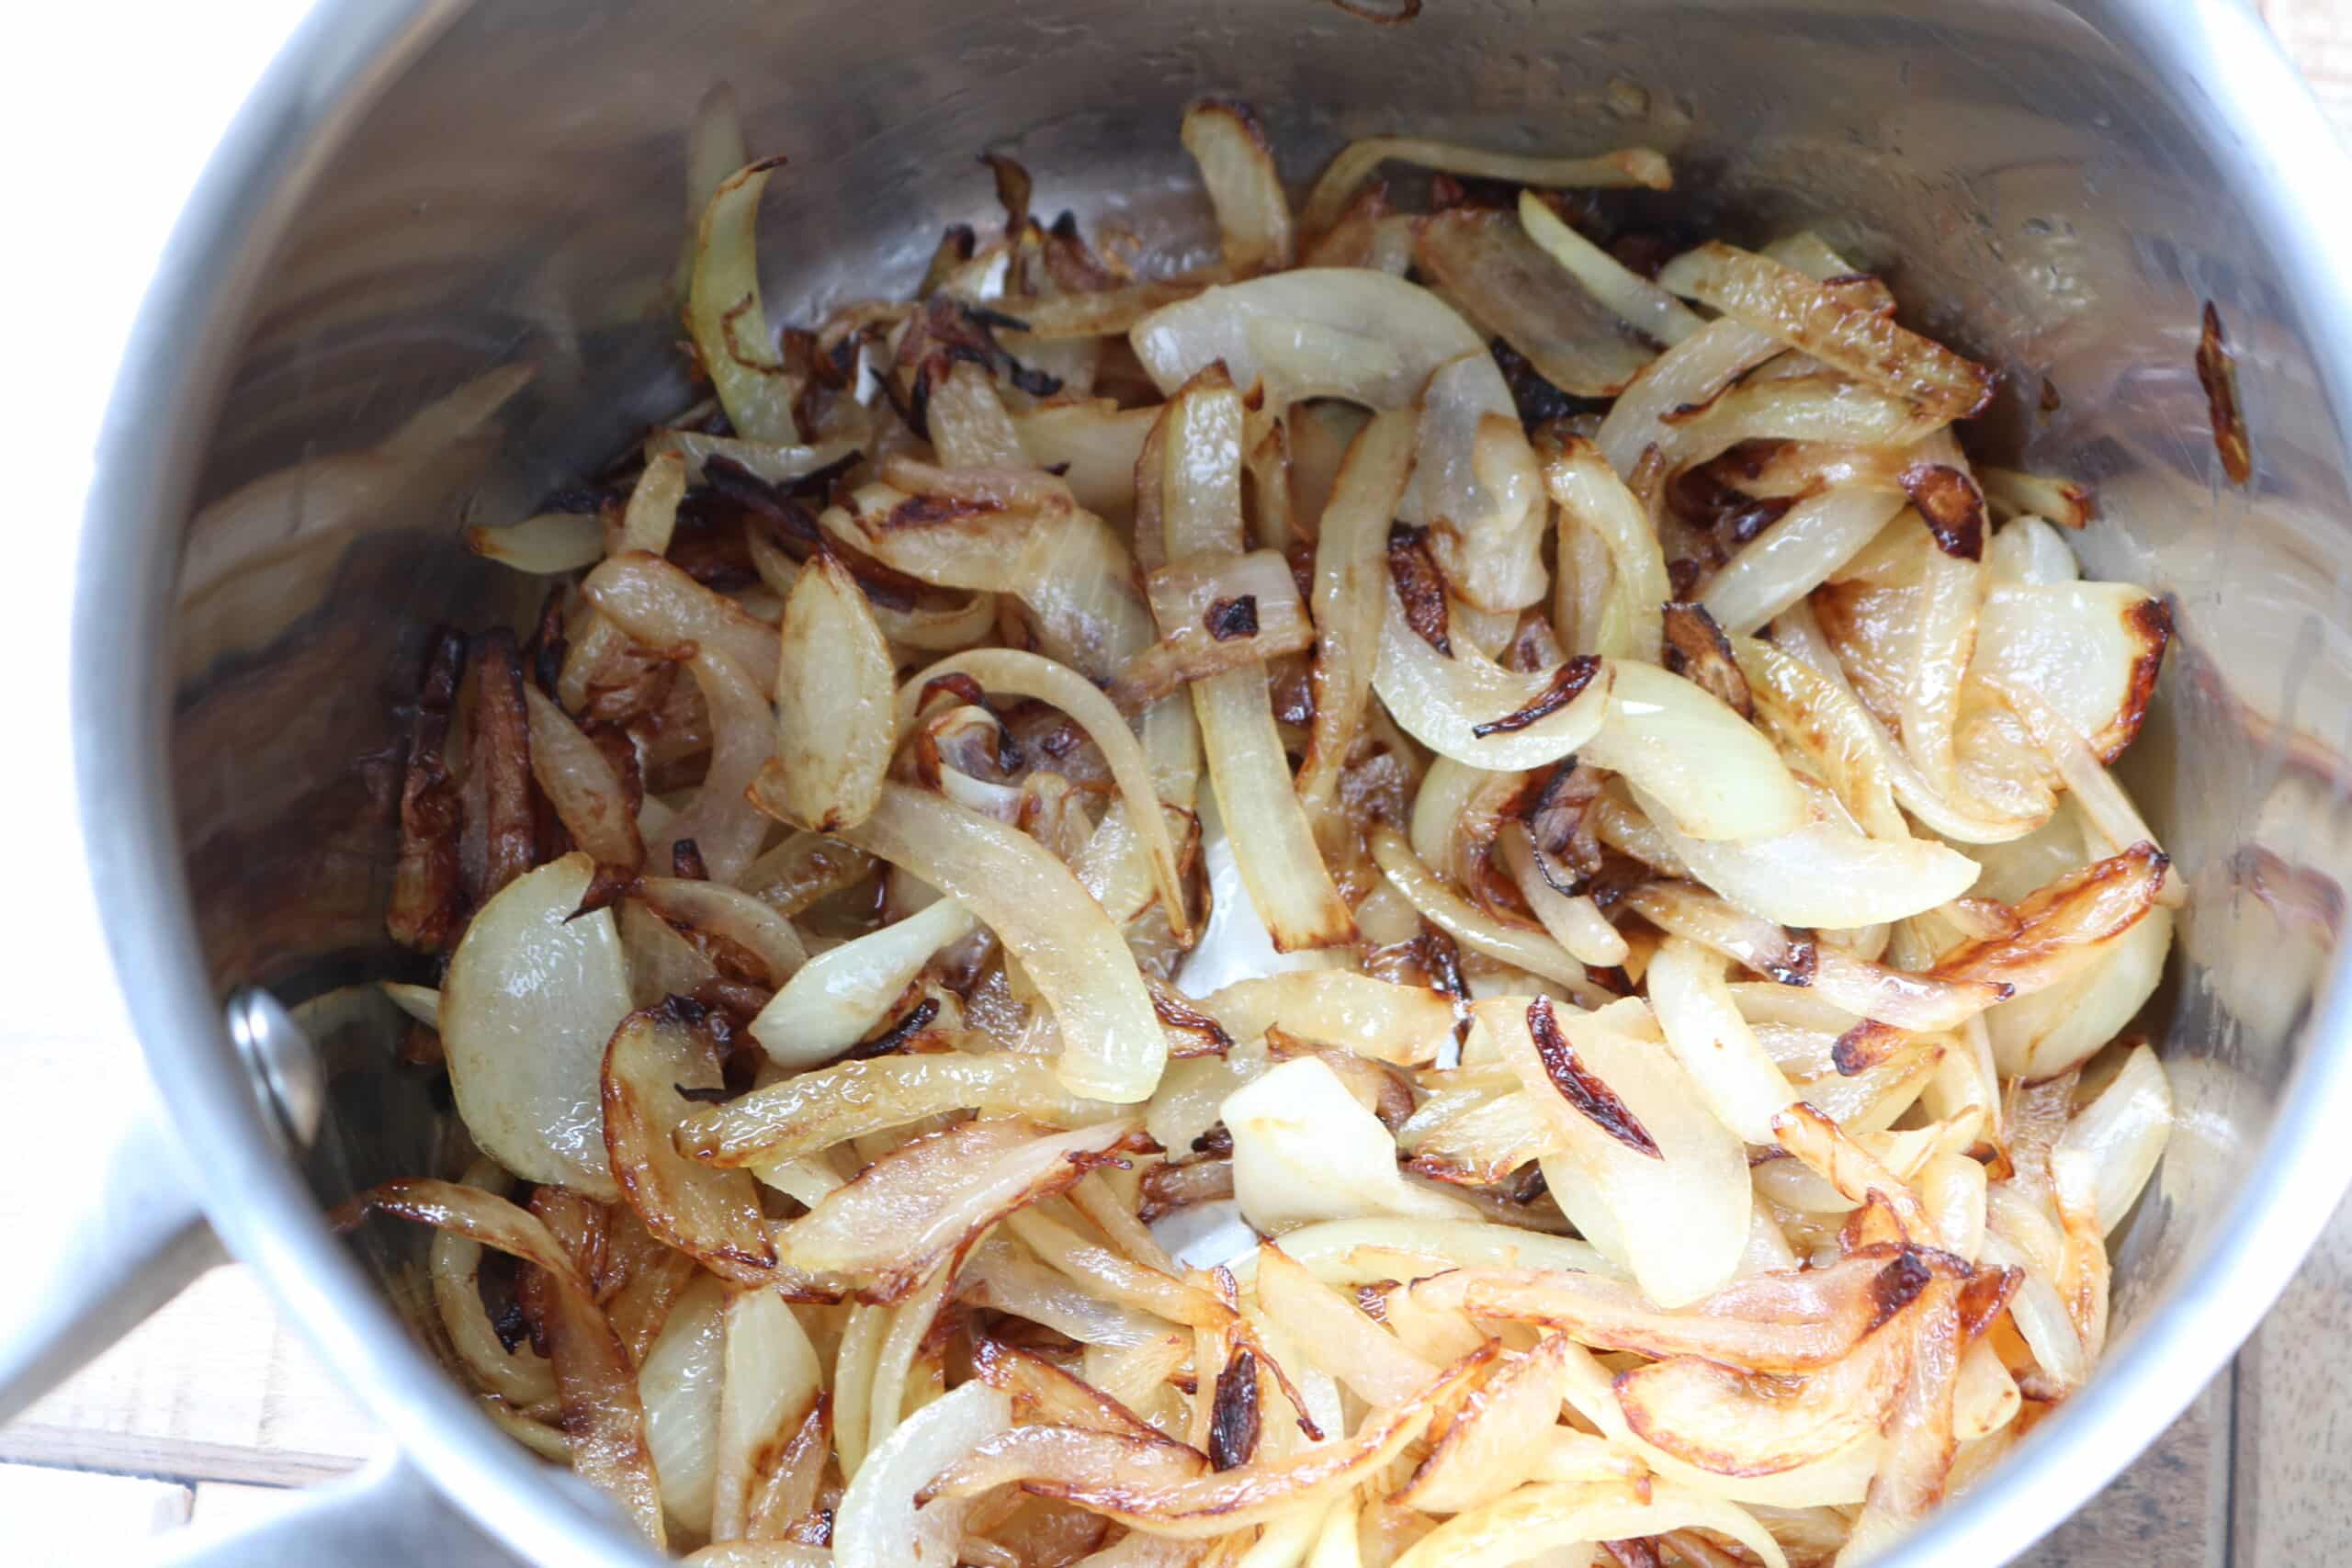 Caremlised onions